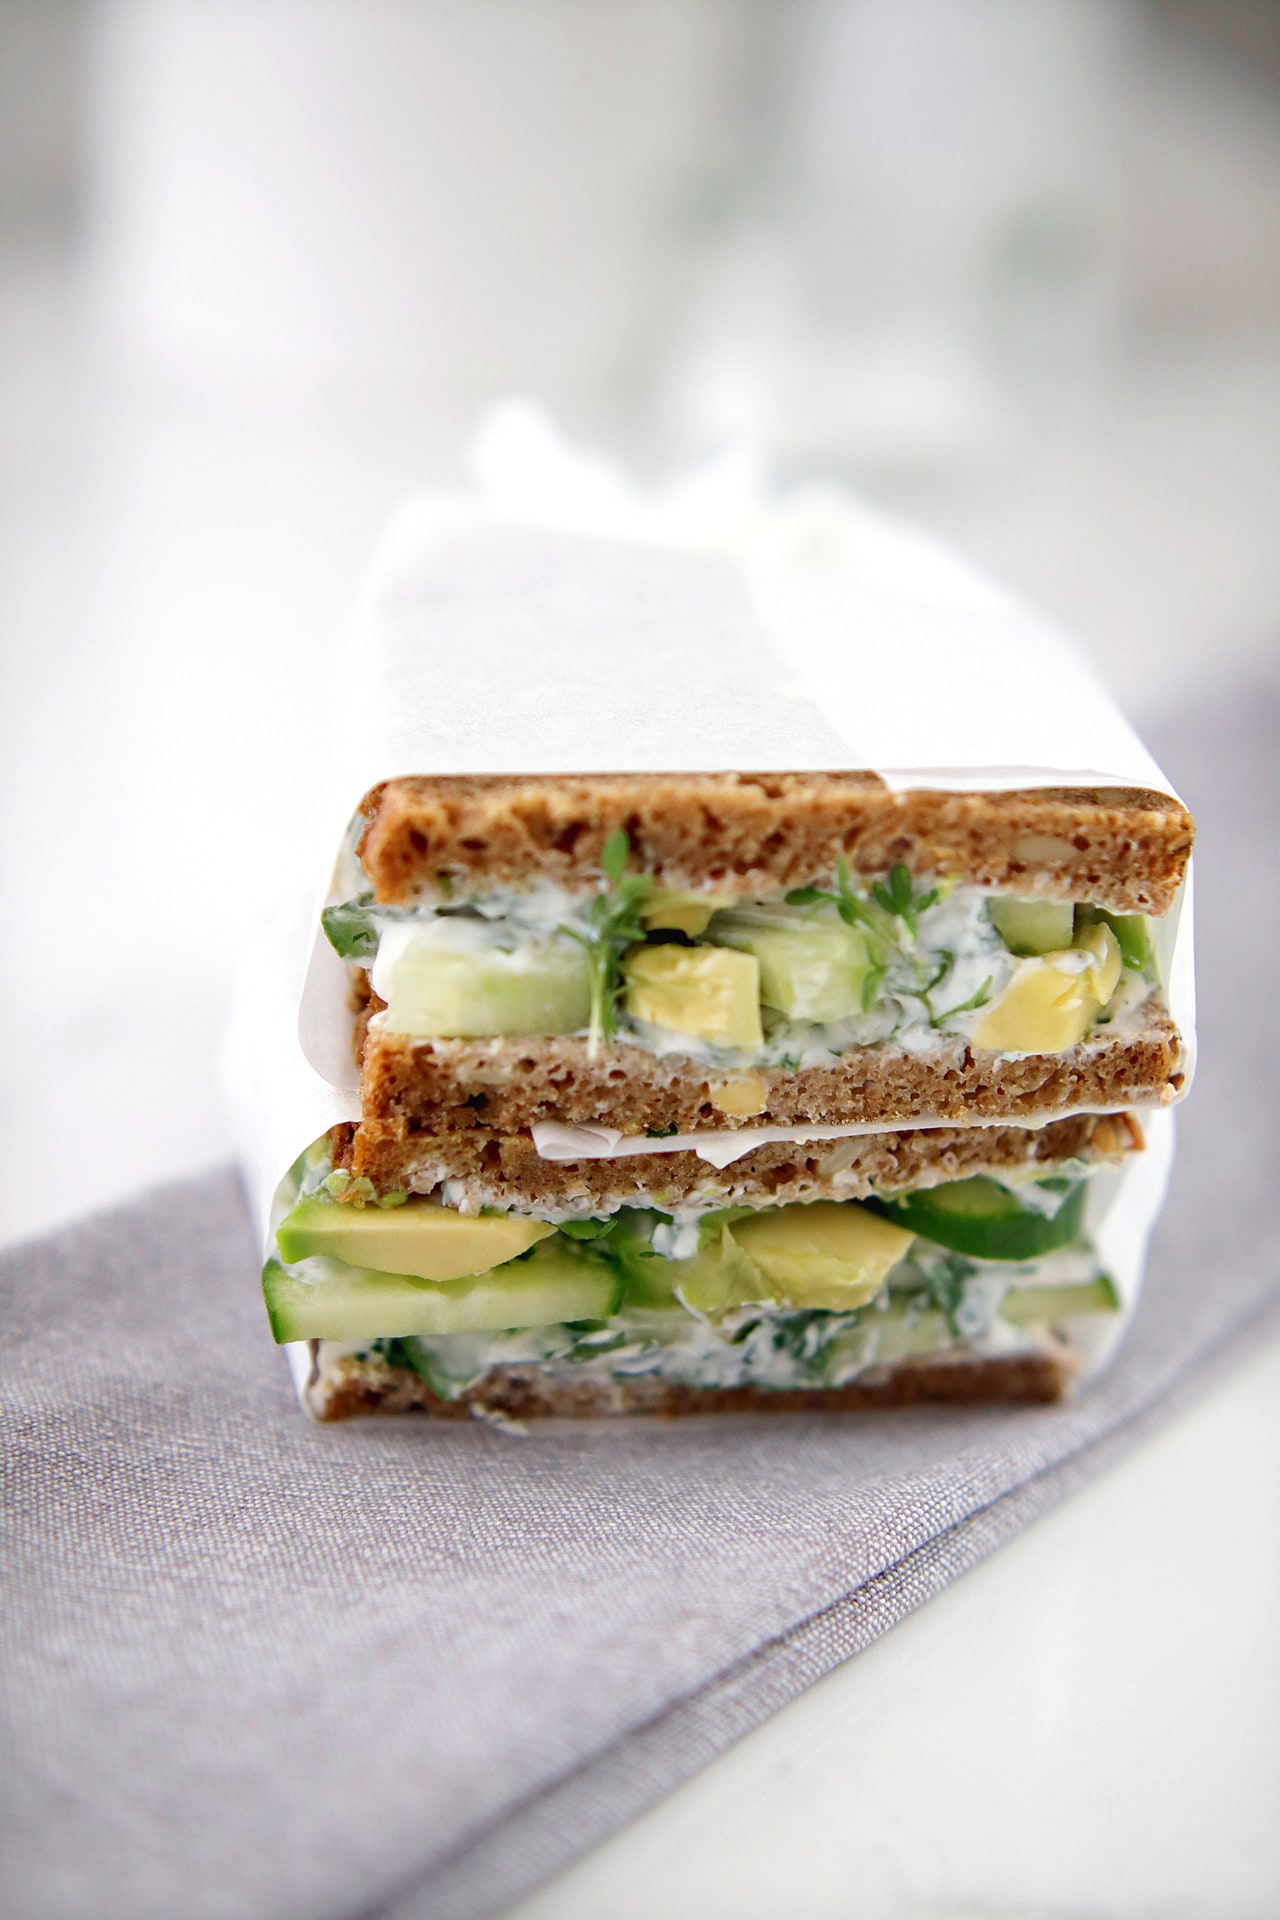 Sandwich mit Avocado Gurke Kresse und Frischkäse stullen und belegte brötchen catering business meeting snacks kaiserwetter